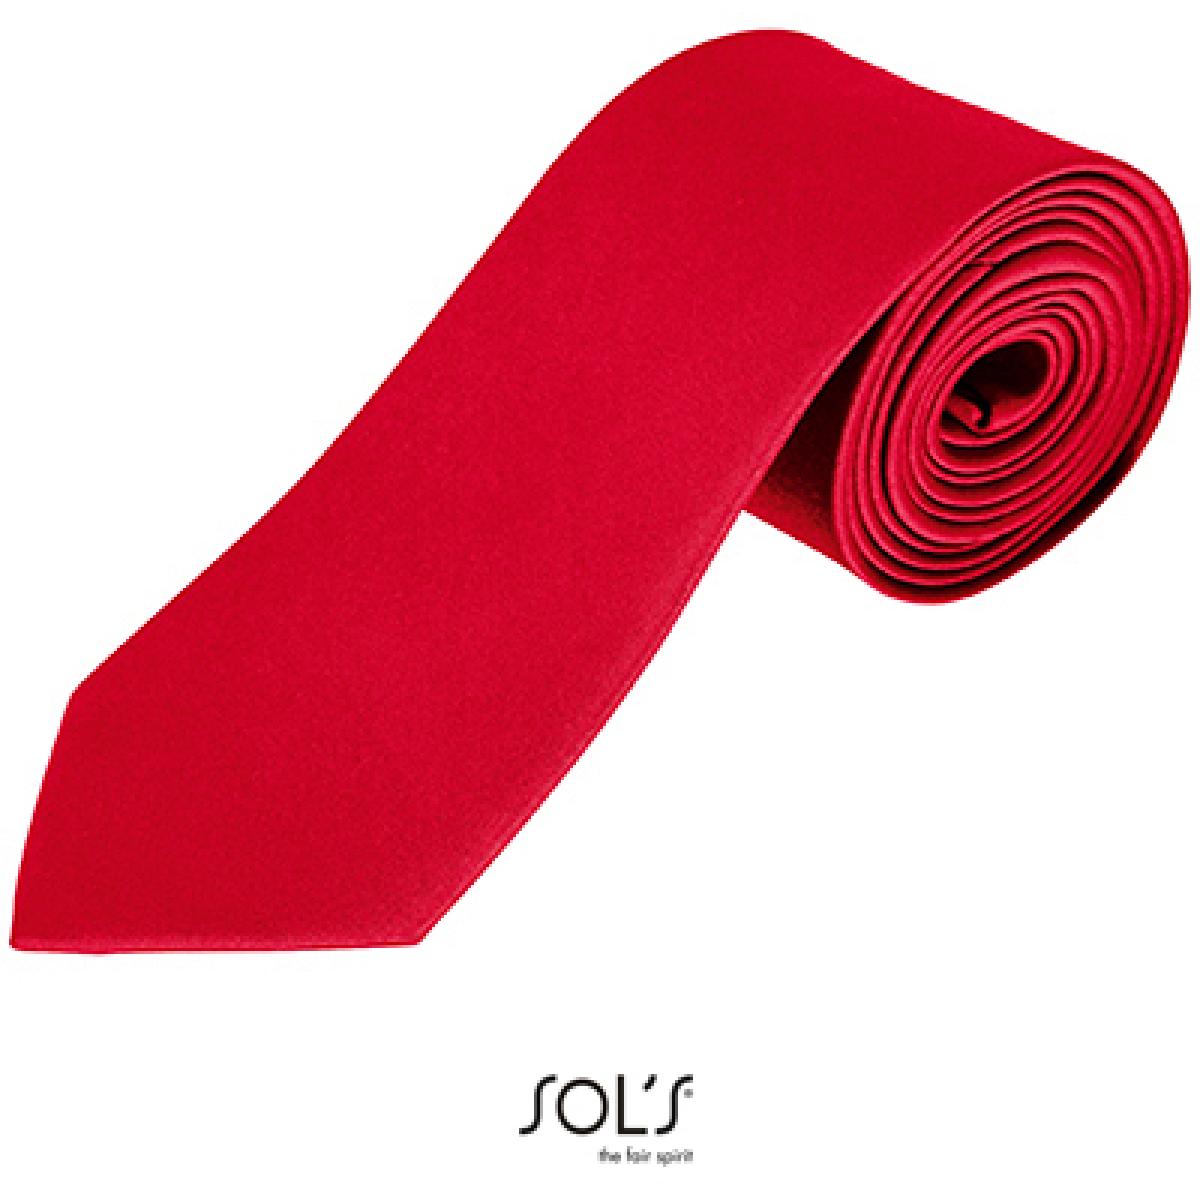 Hersteller: SOLs Herstellernummer: 02932 Artikelbezeichnung: Herren Krawatte Garner Tie - Länge: 150 cm, Breite: 7 cm" Farbe: Red